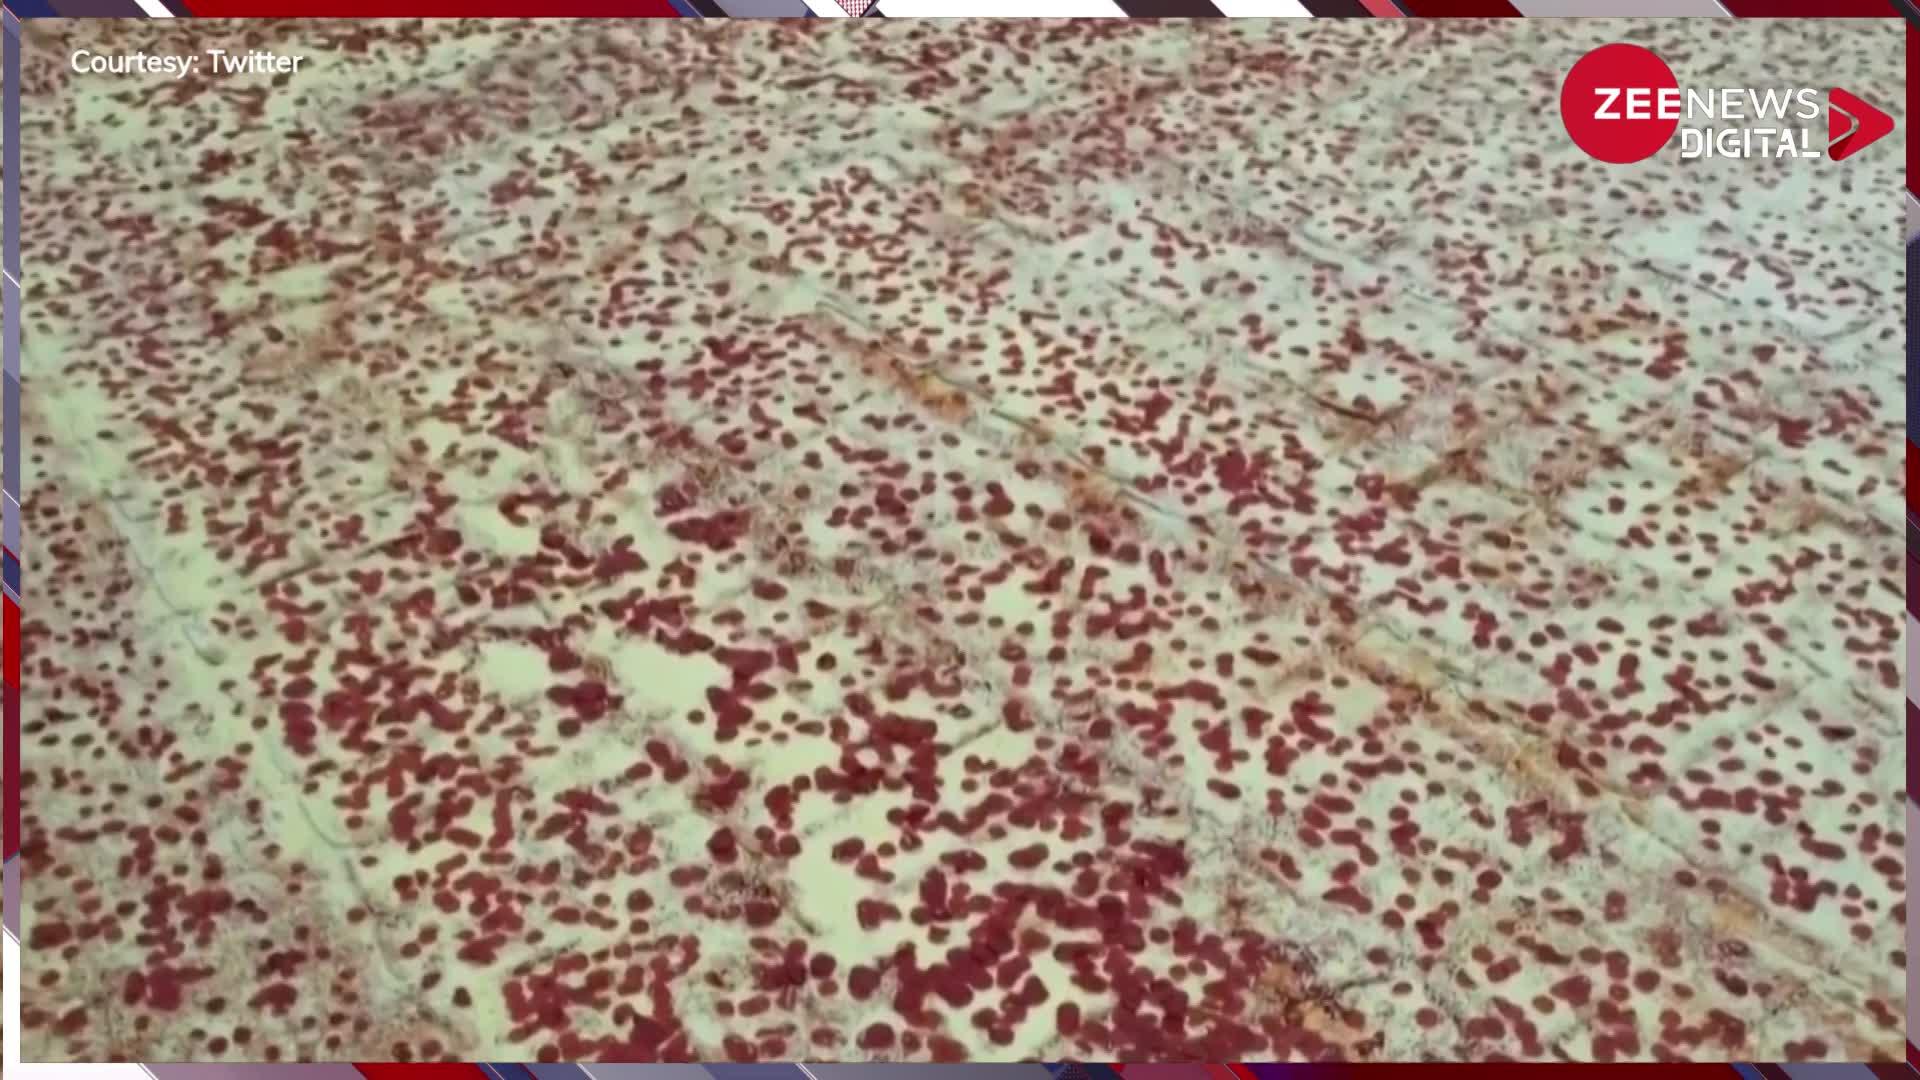 World's Largest Pizza: यहां बन रहा दुनिया का सबसे बड़ा पिज्जा, देखते ही आ जाएगा मुंह में पानी...